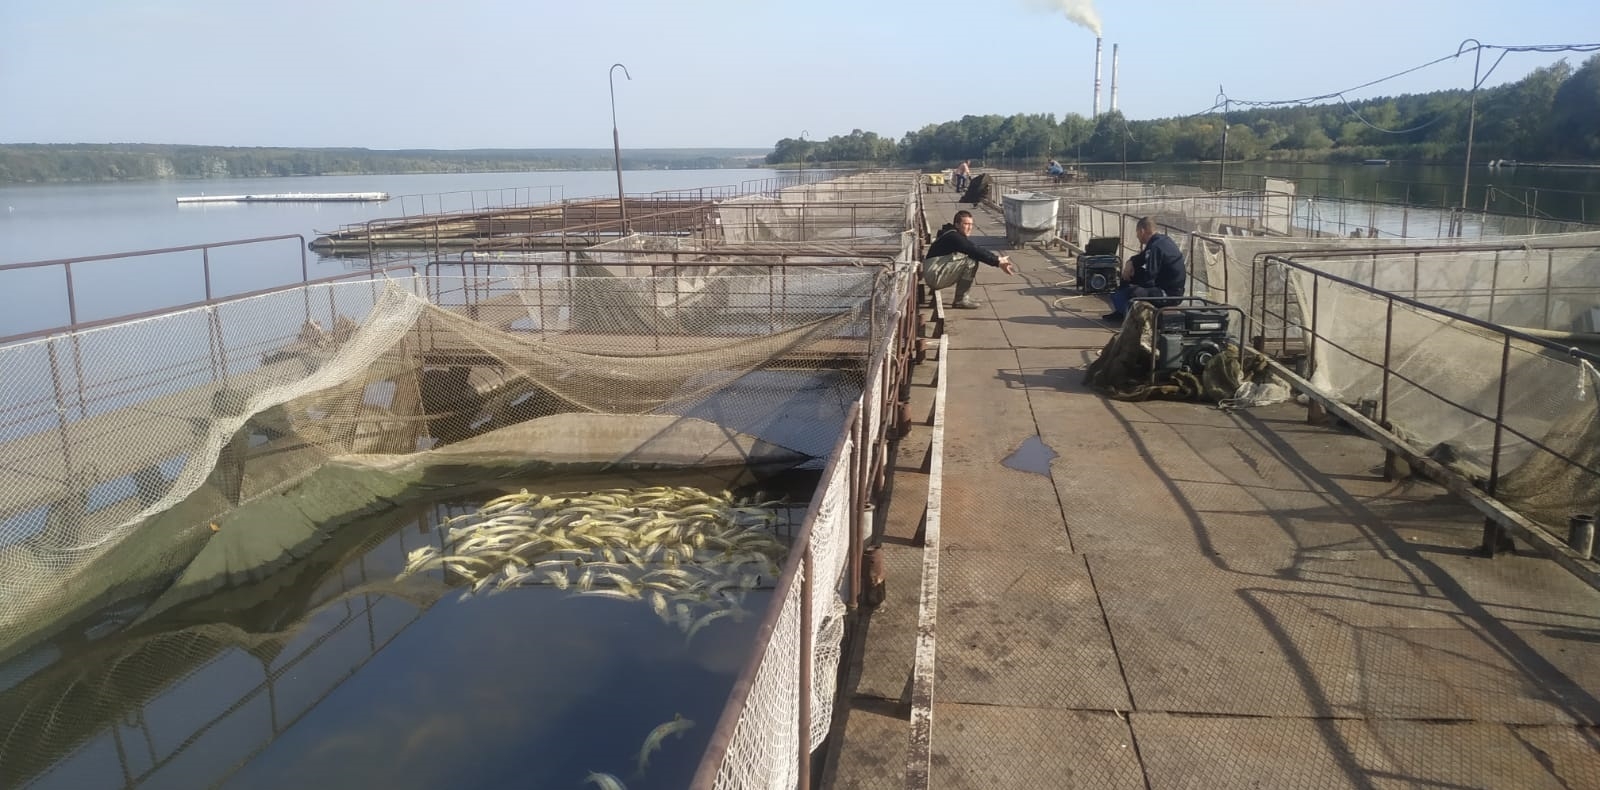 На Вінниччині загинула ціла ферма червонокнижної риби - 9 тонн осетра і білуги